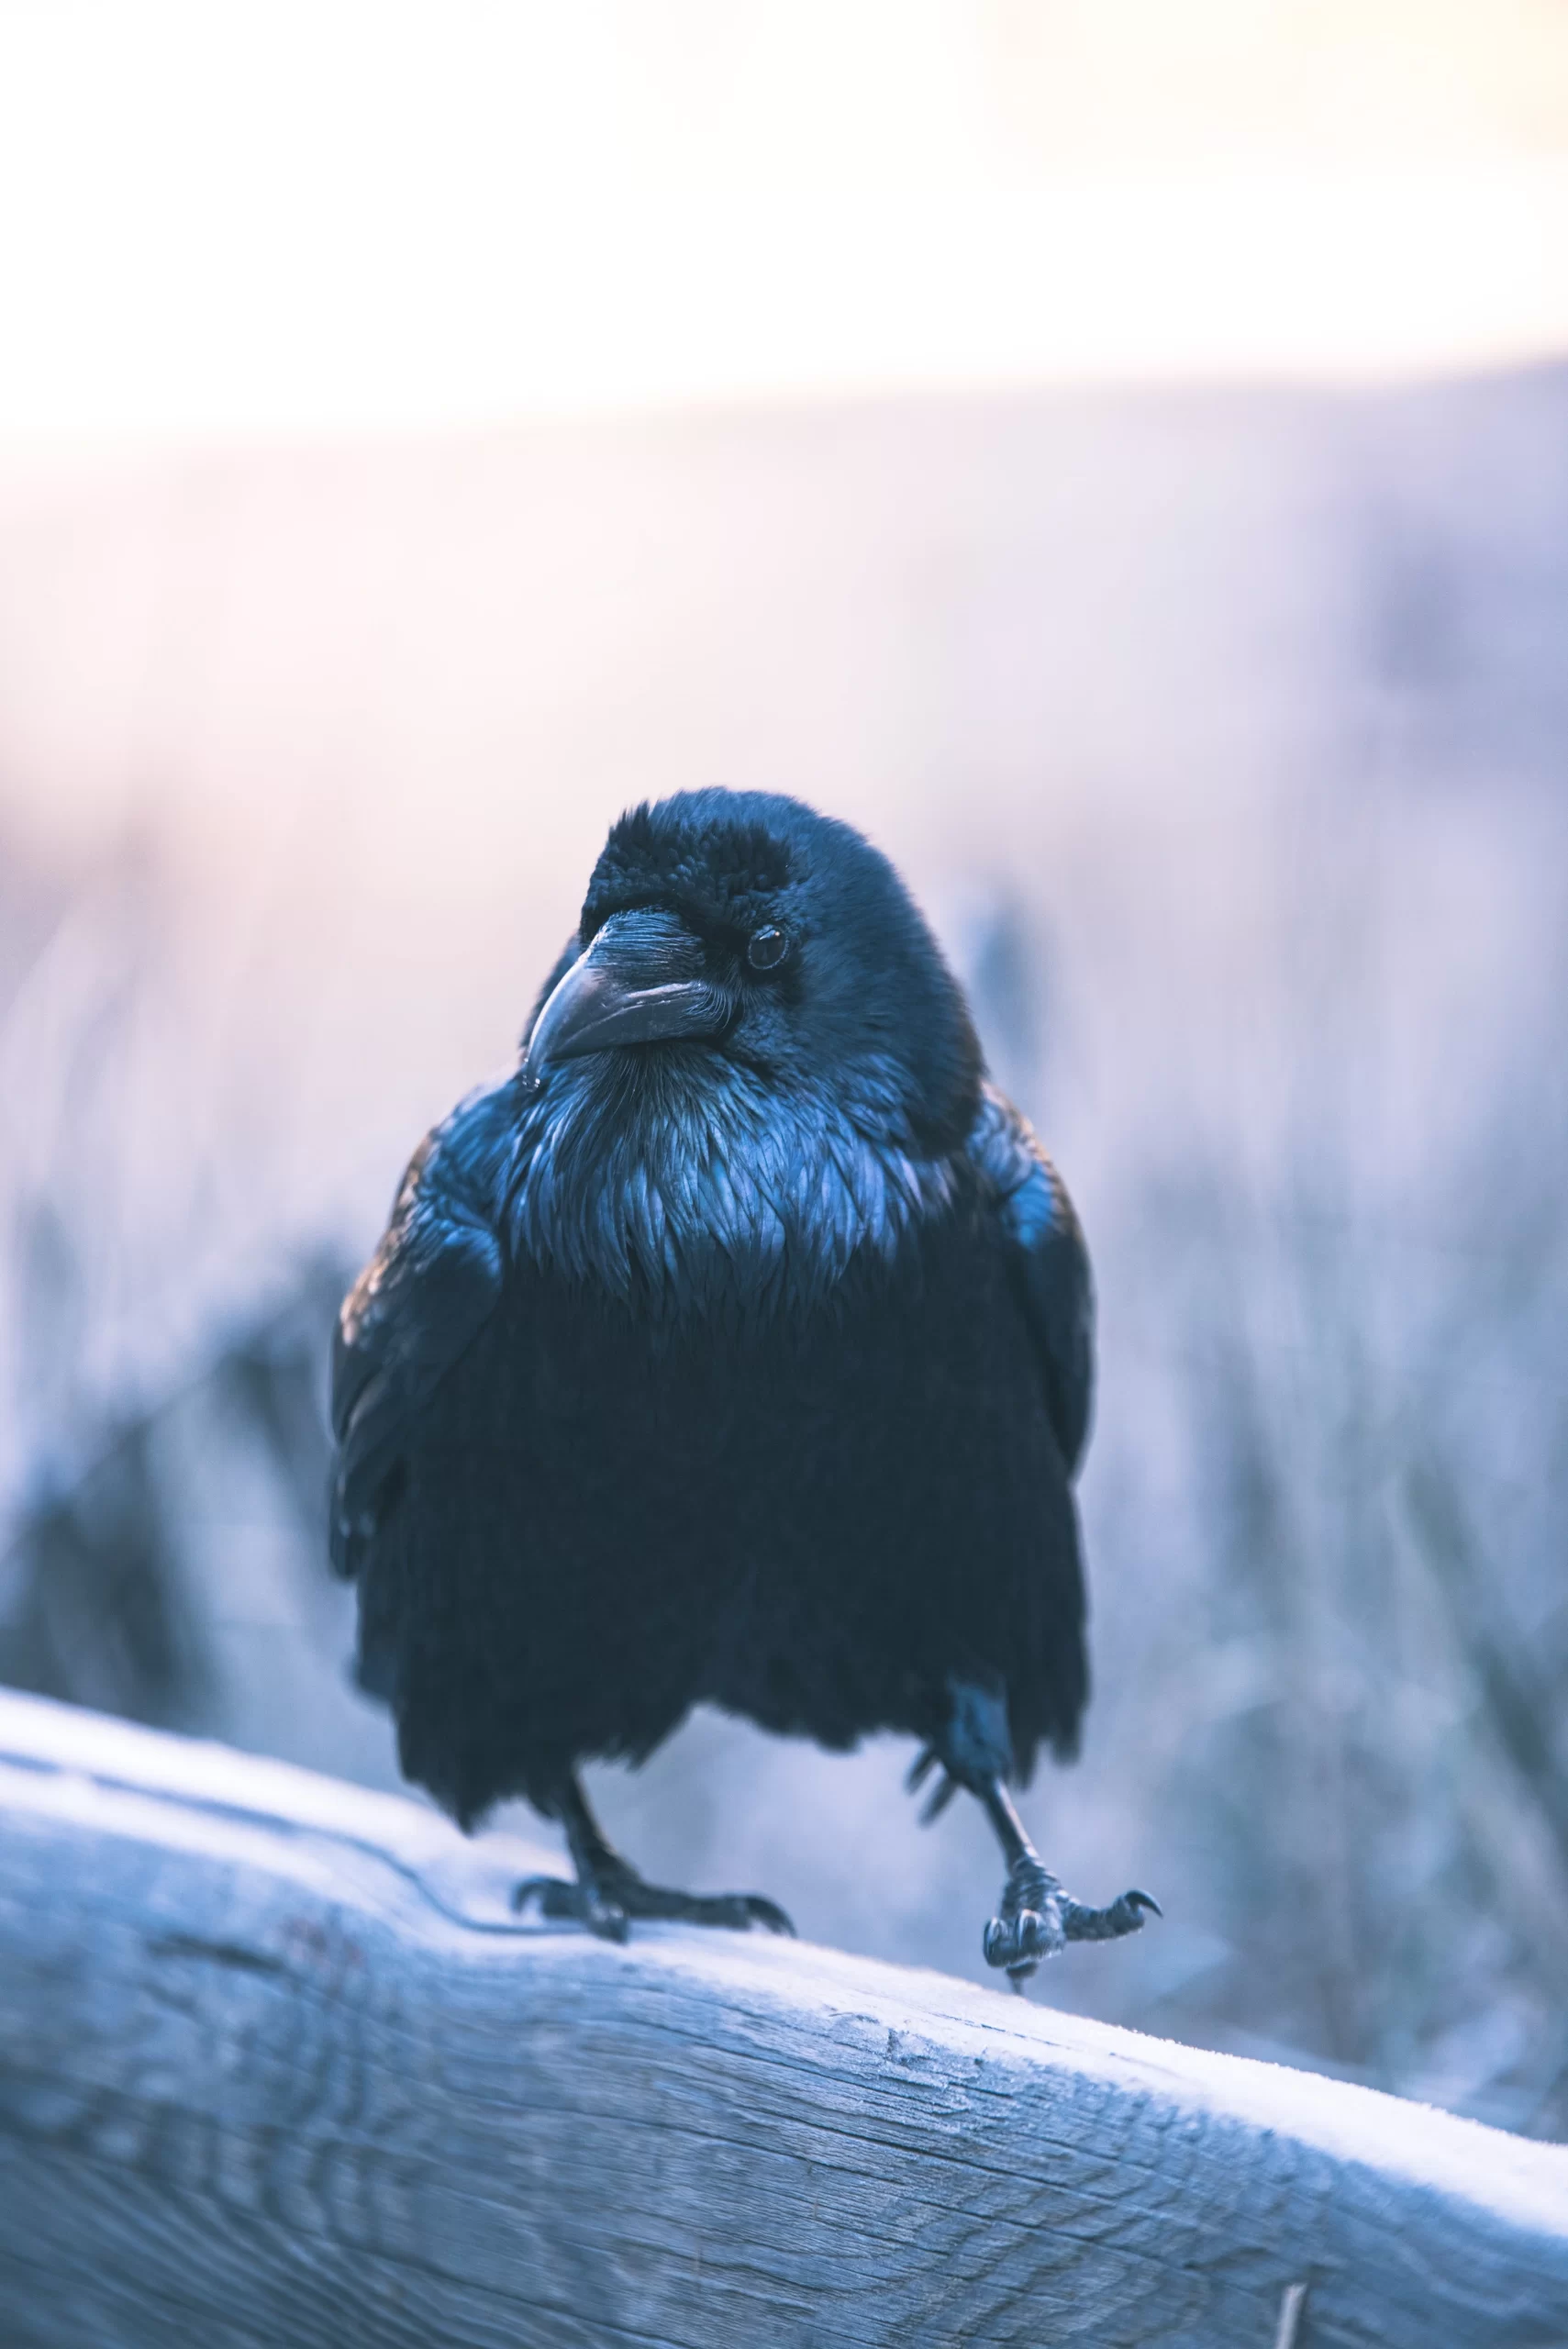 casey-horner-Raven walking on wooden fence line unsplash